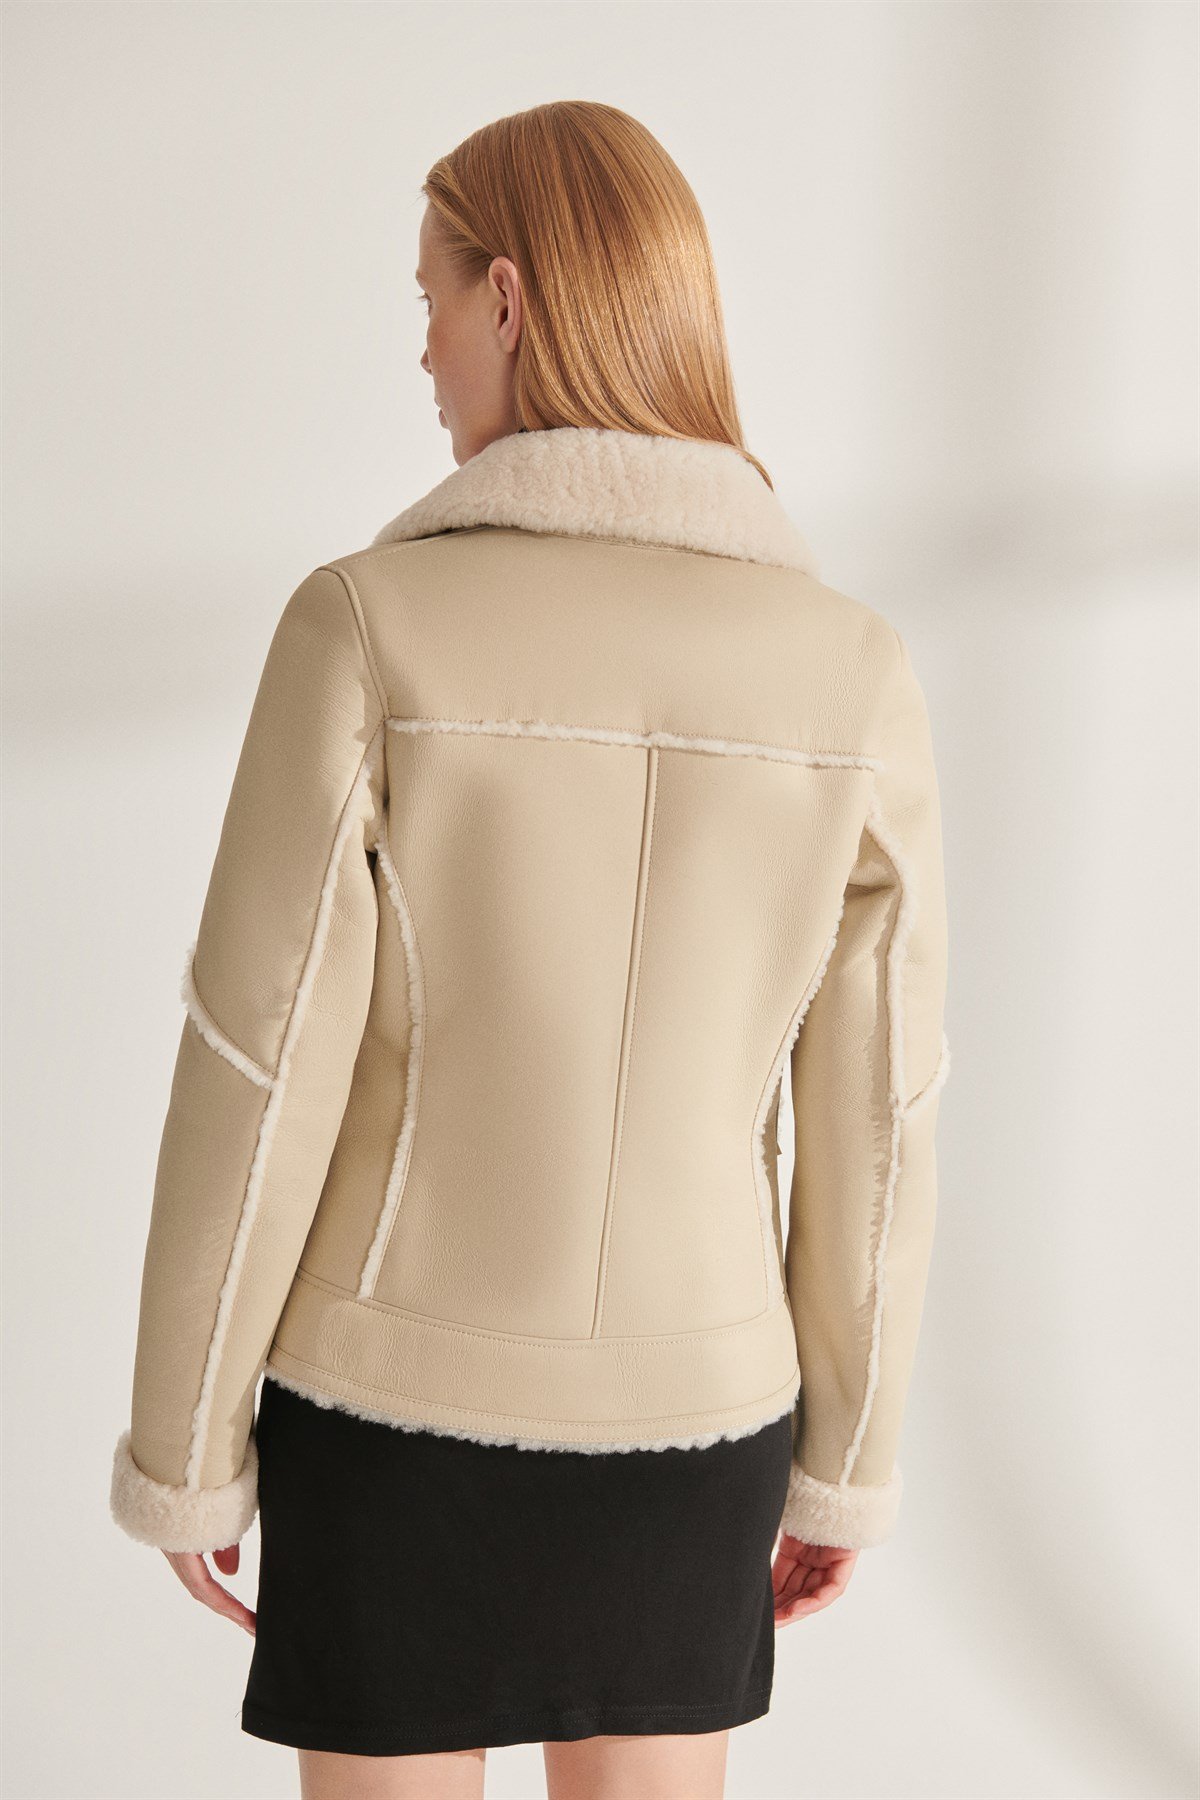 ESMERALDE Women's Beige Sport Shearling Leather Jacket | Women's Shearling Leather  Jacket Models